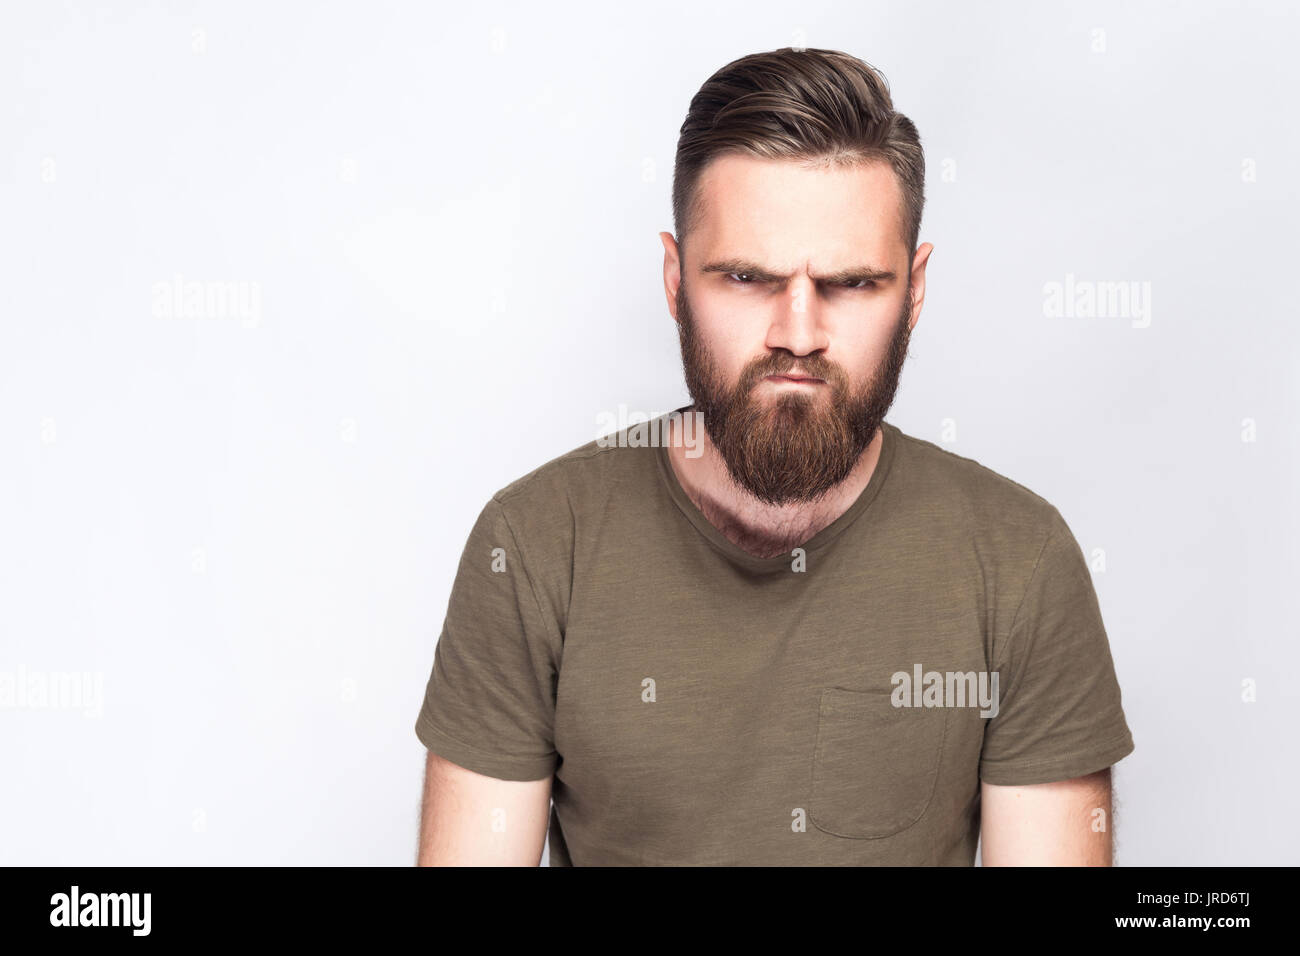 Portrait d'homme barbu triste en colère avec t-shirt vert foncé à l'arrière-plan gris clair. studio shot. Banque D'Images